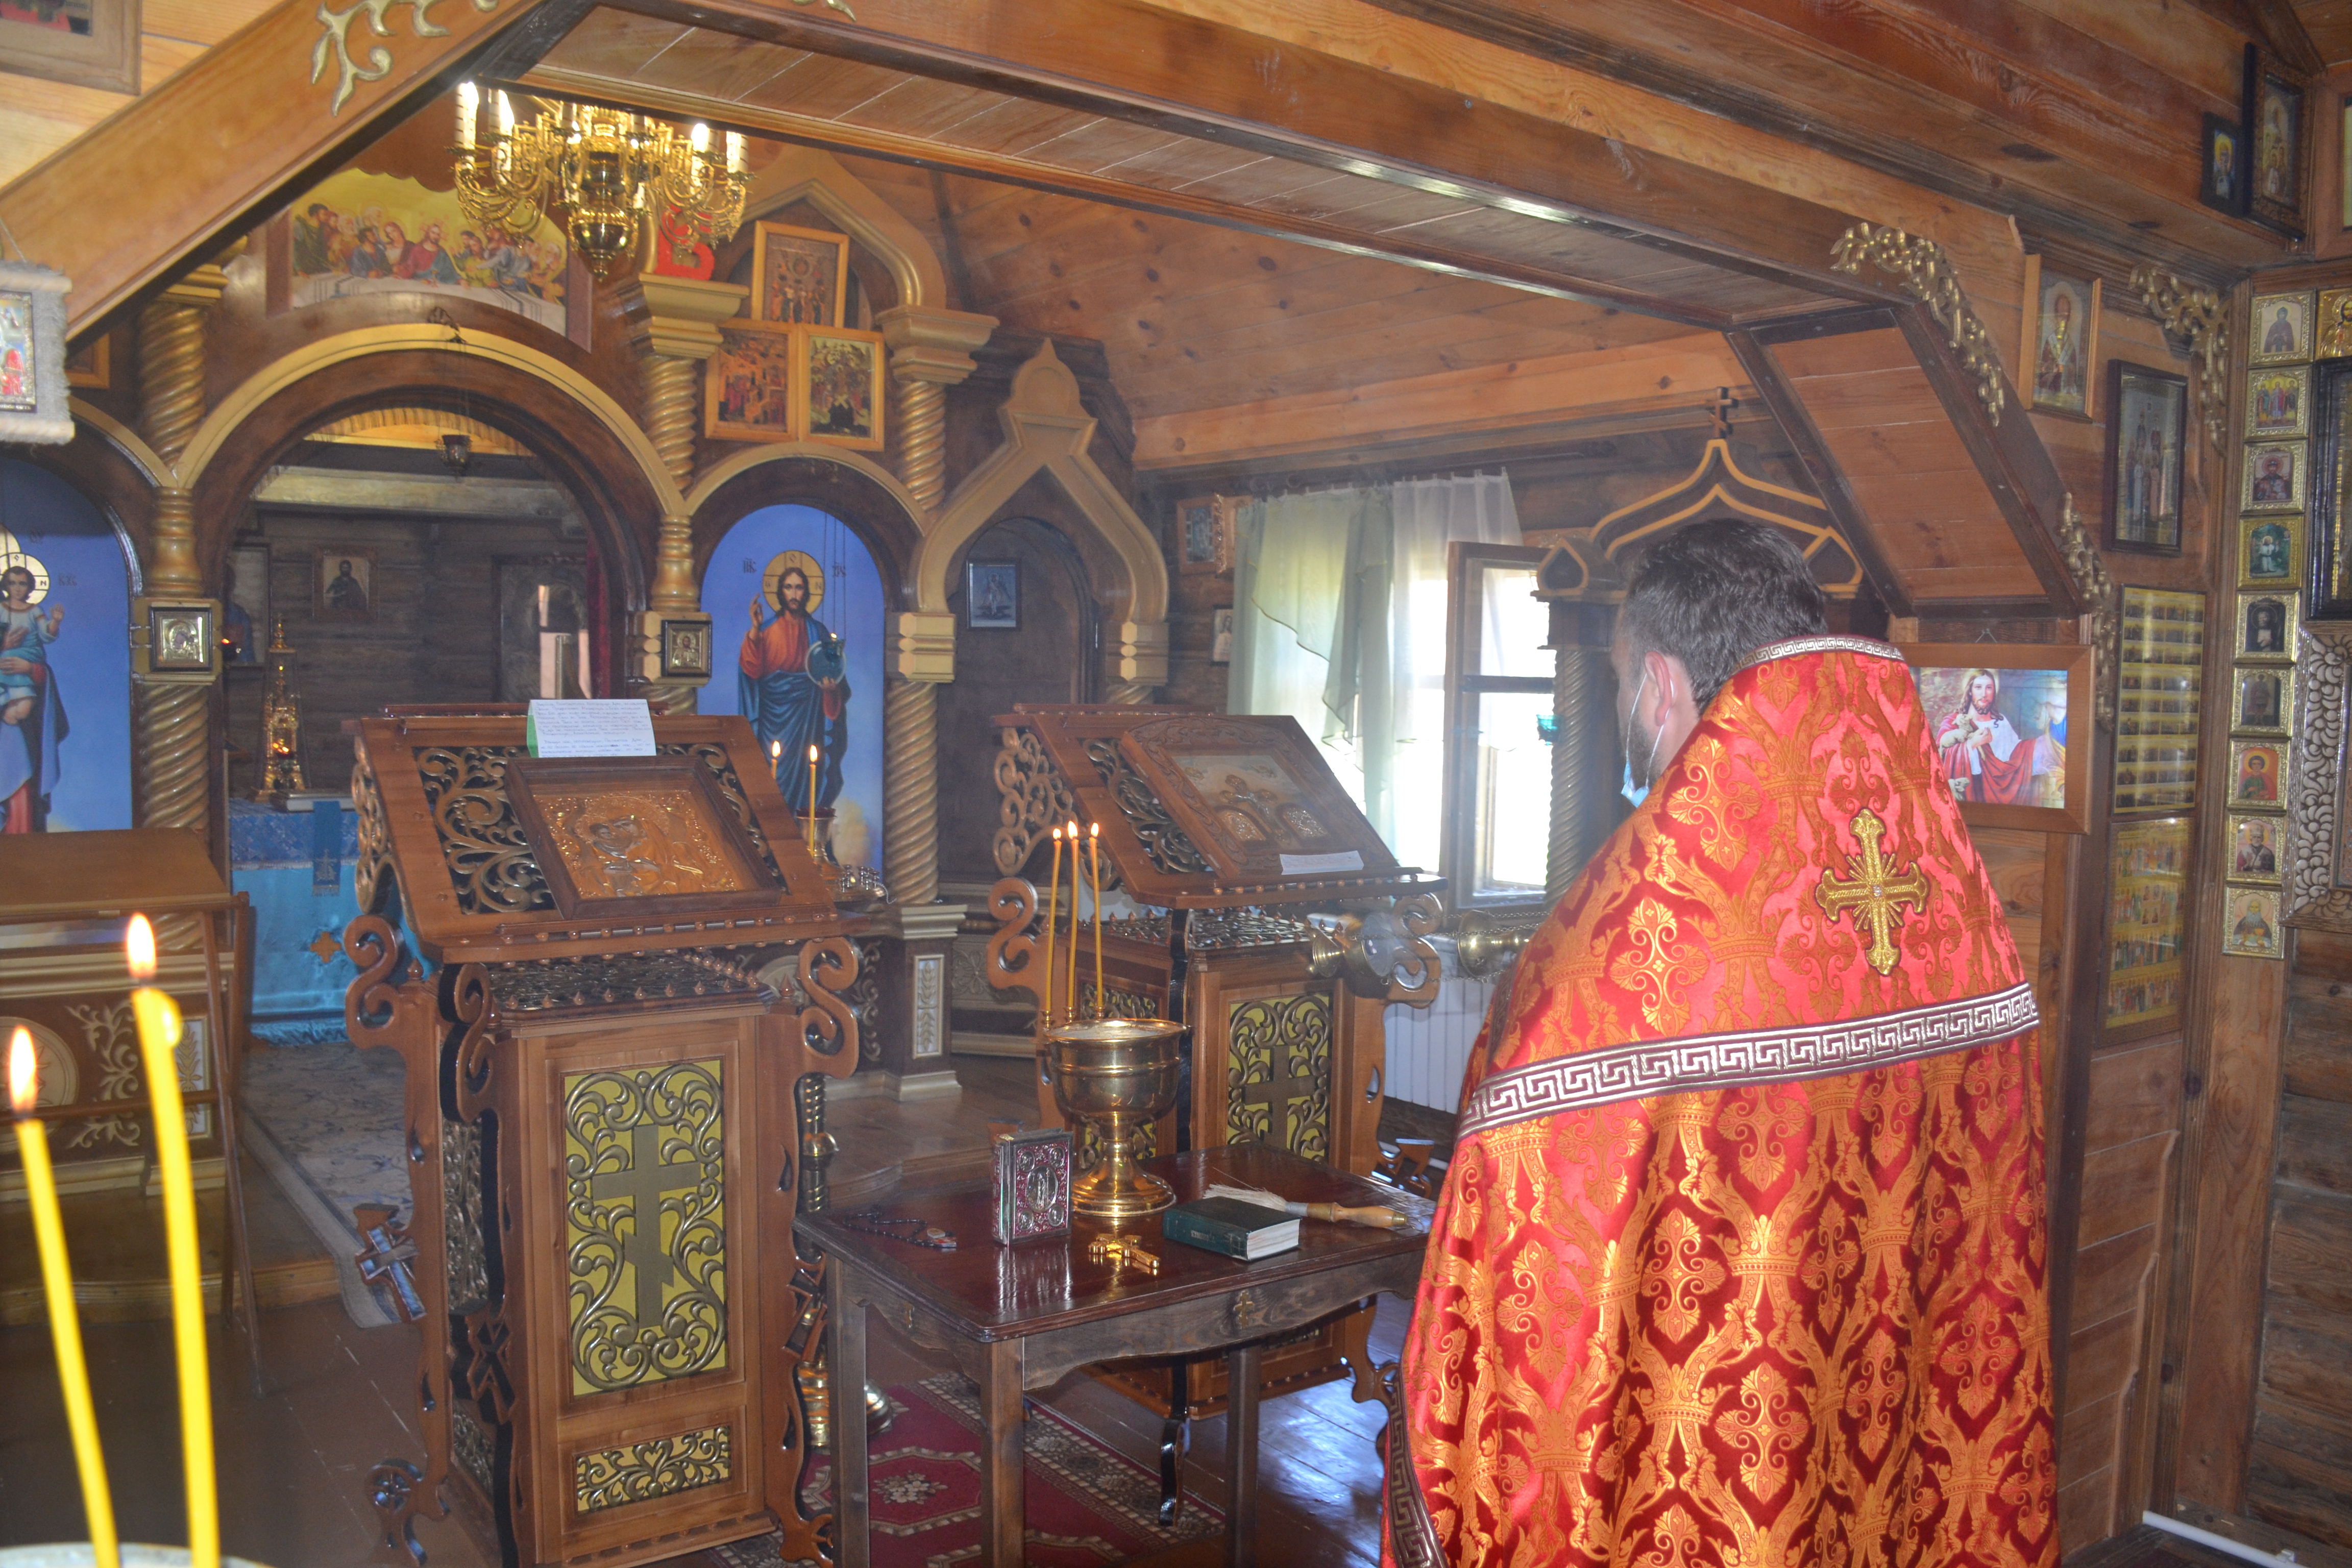 Протоиерей Антоний Шварёв совершил молебен в храме при исправительной колонии №7